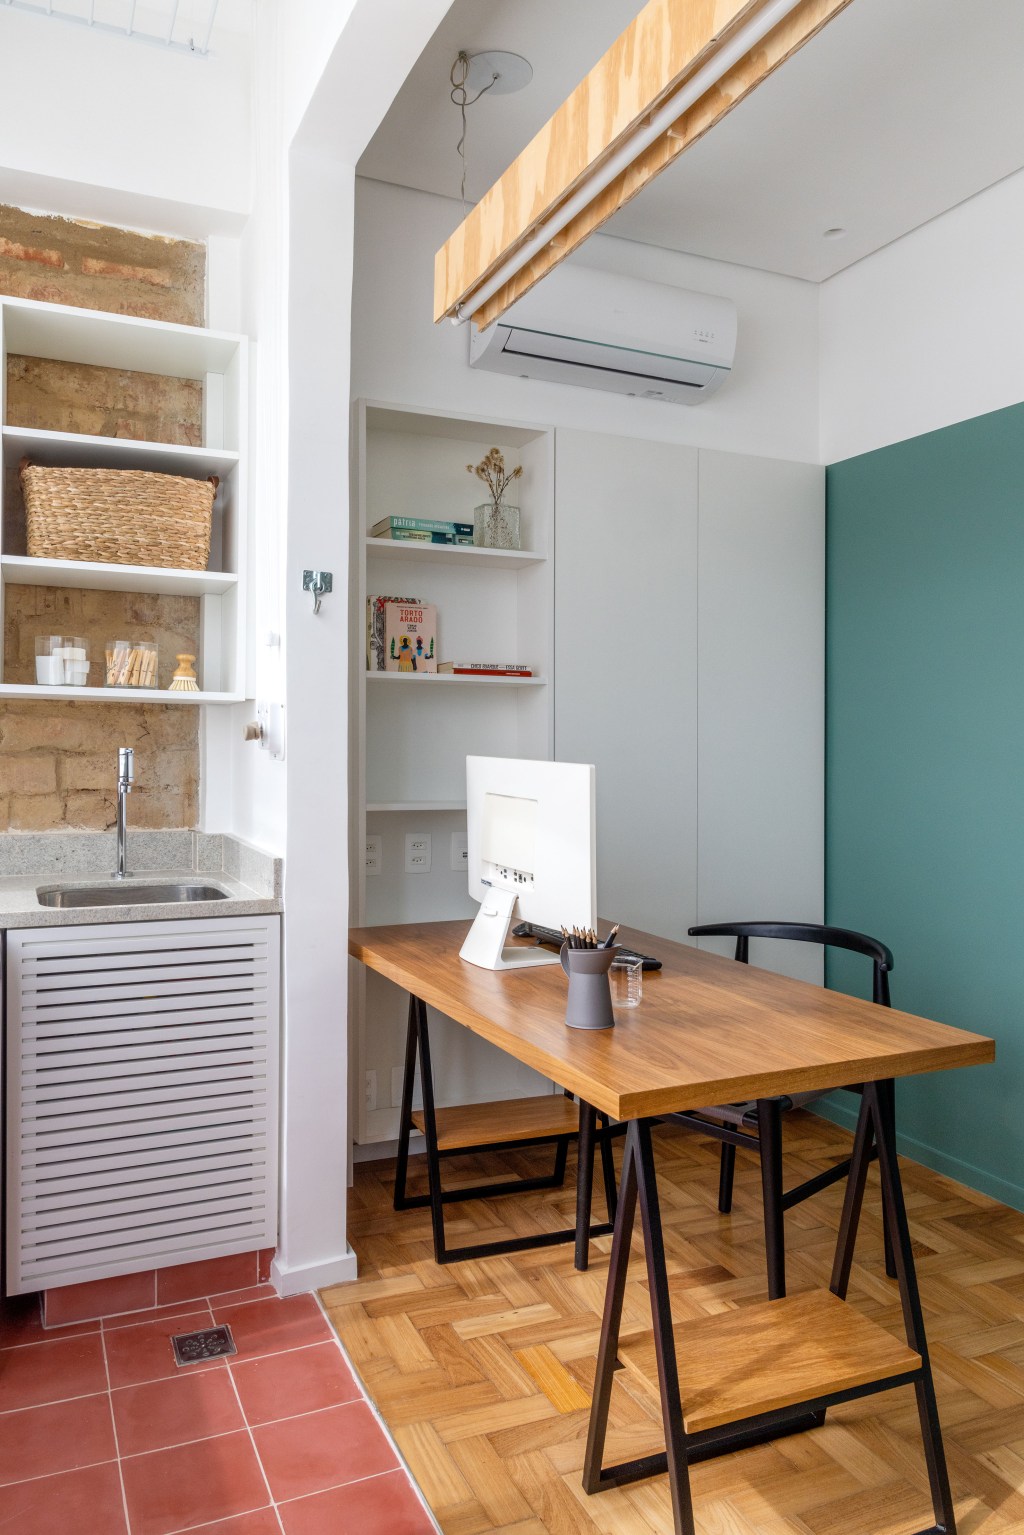 Apê de 90 m² ganha cara de casa com revestimentos charmosos e cores. Projeto Ana Neri. Na foto, home office integrado à lavanderia.